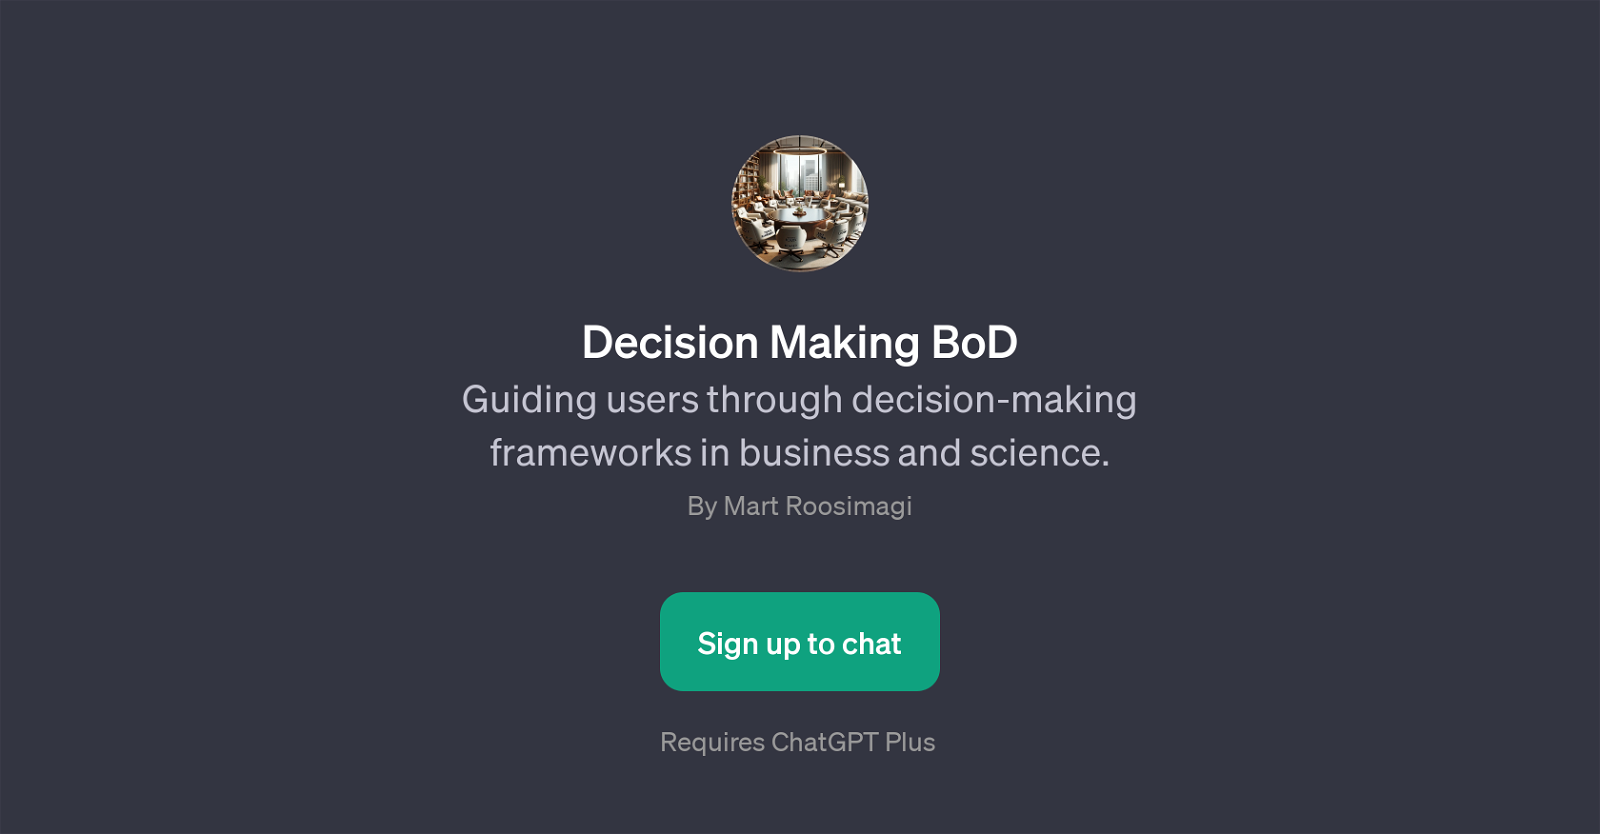 Decision Making BoD website